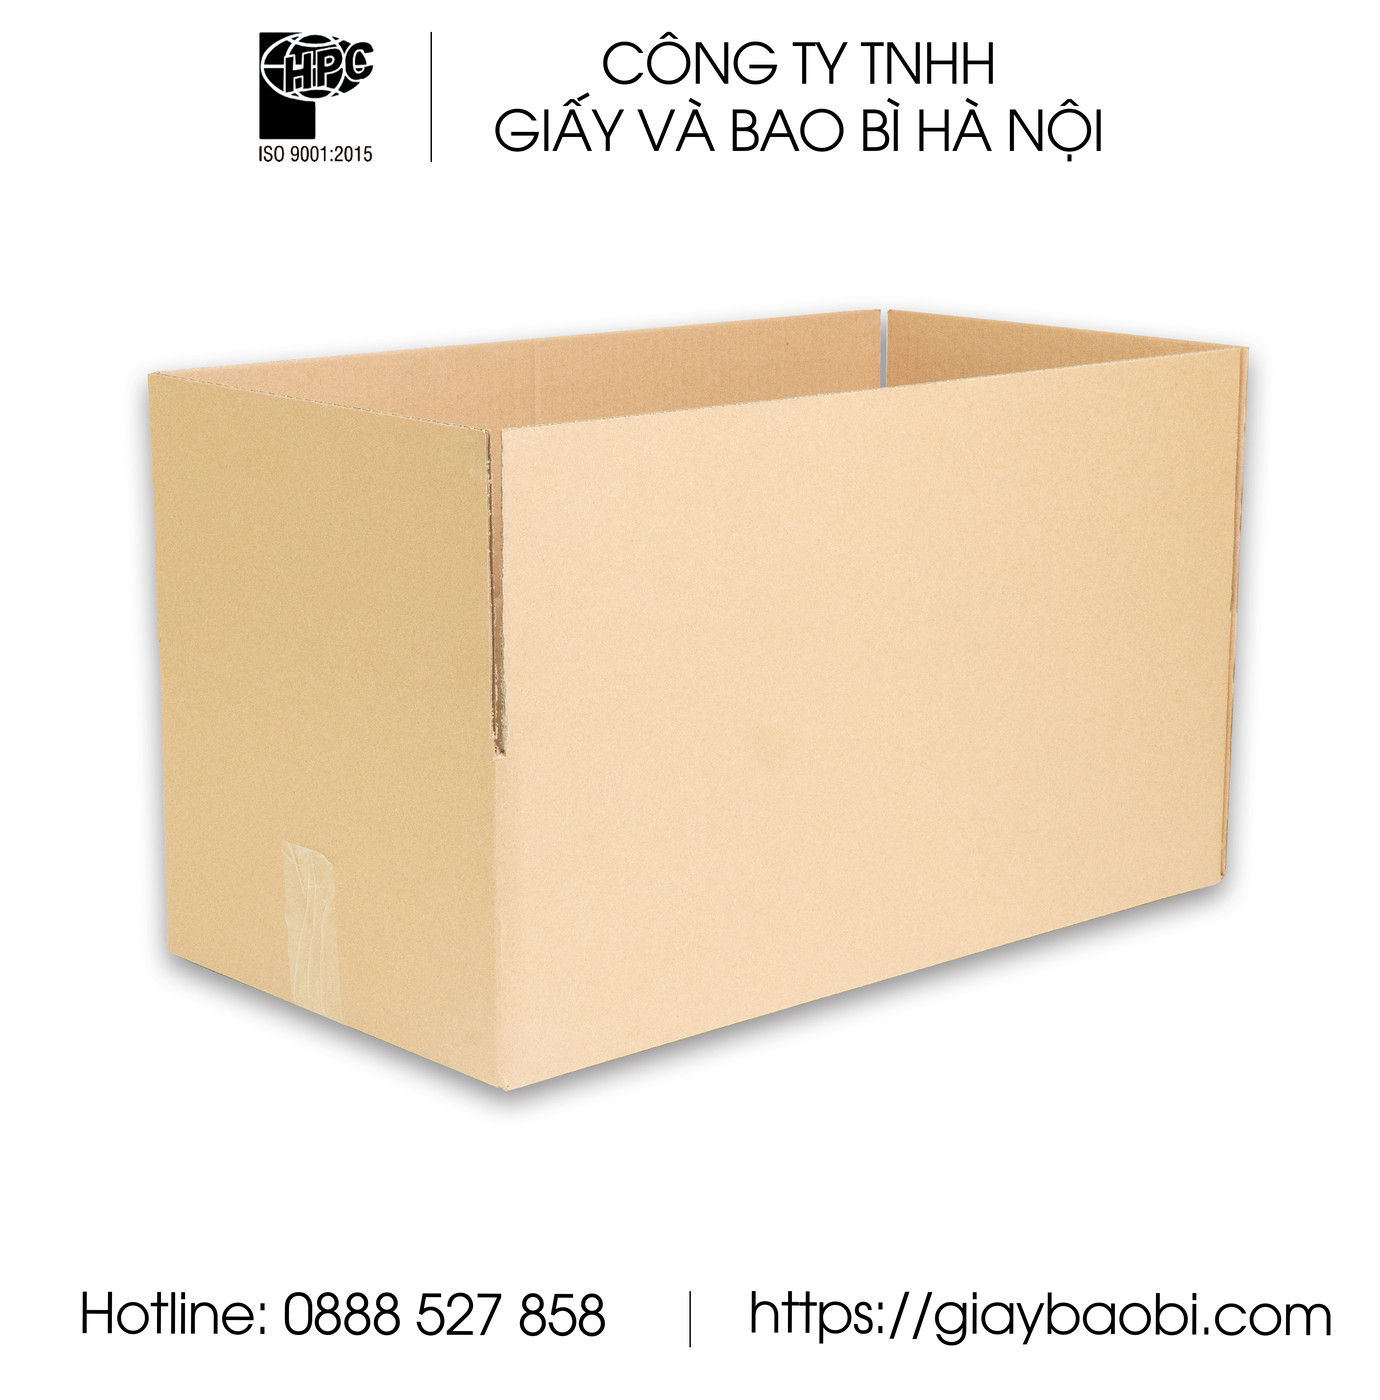 Dịch vụ thiết kế sản xuất hộp carton